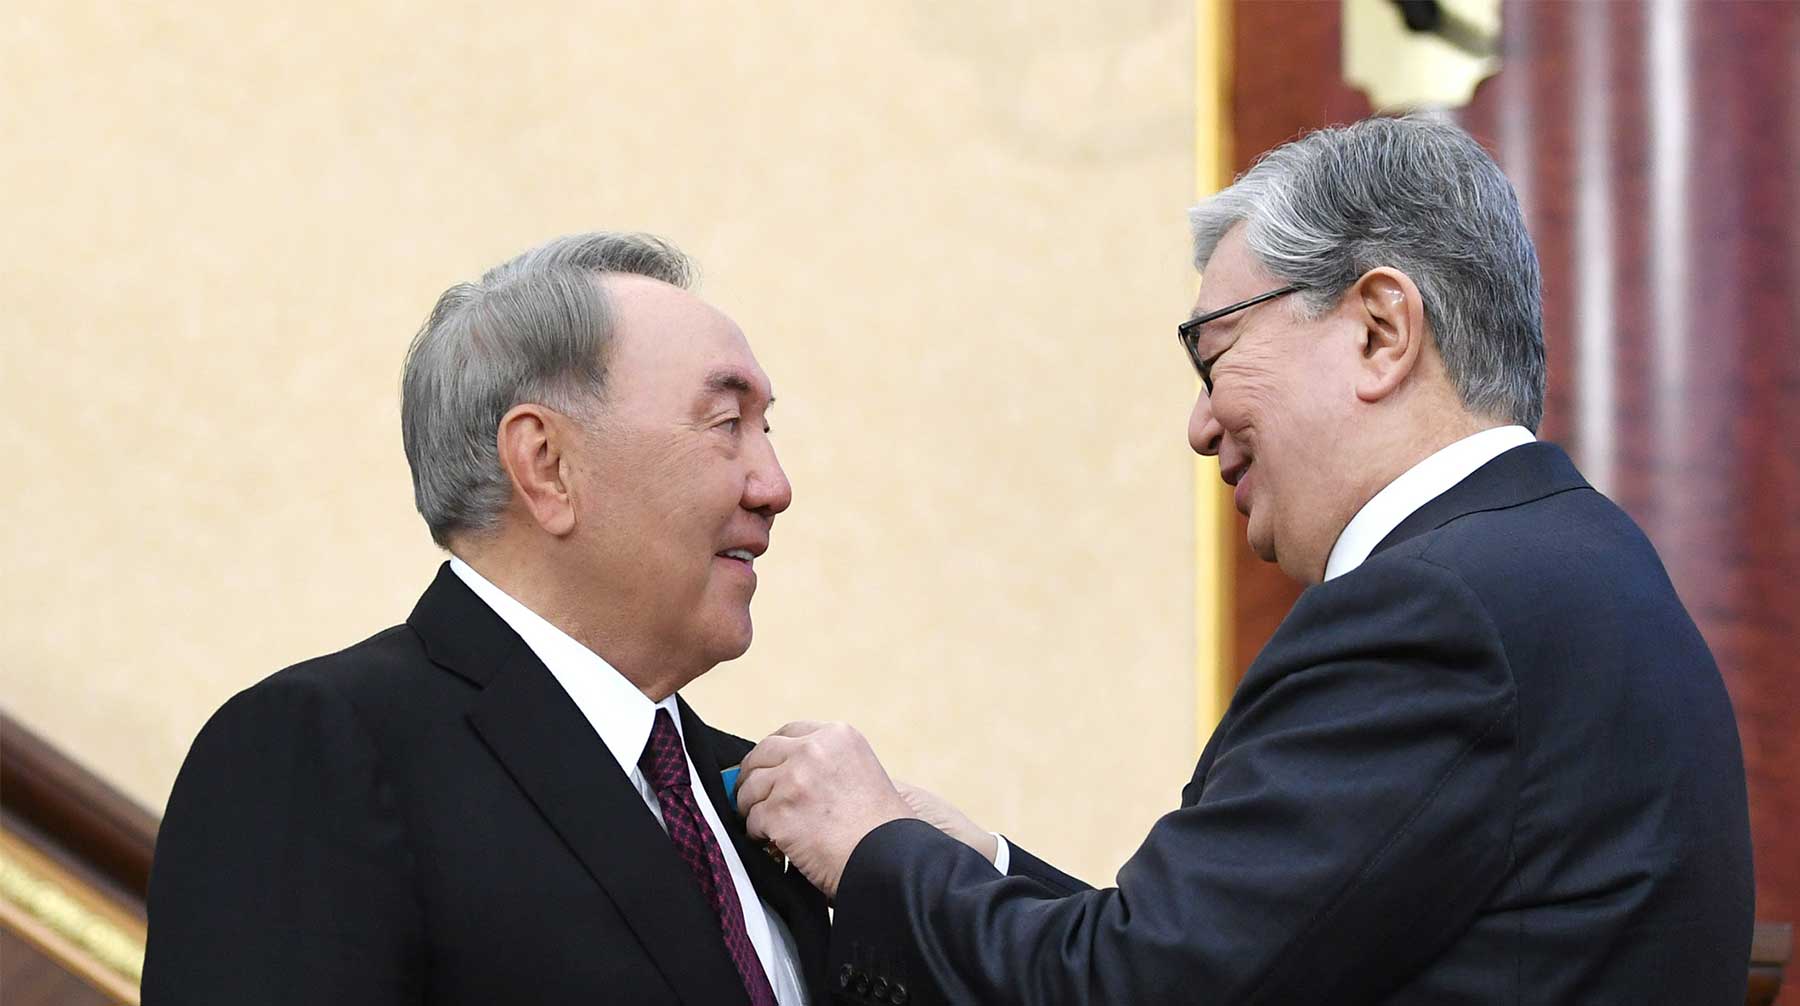 Столицу республики назвали в честь ее первого президента, который занимал свой пост почти 30 лет Нурсултан Назарбаев (слева) и Касым-Жомарт Токаев